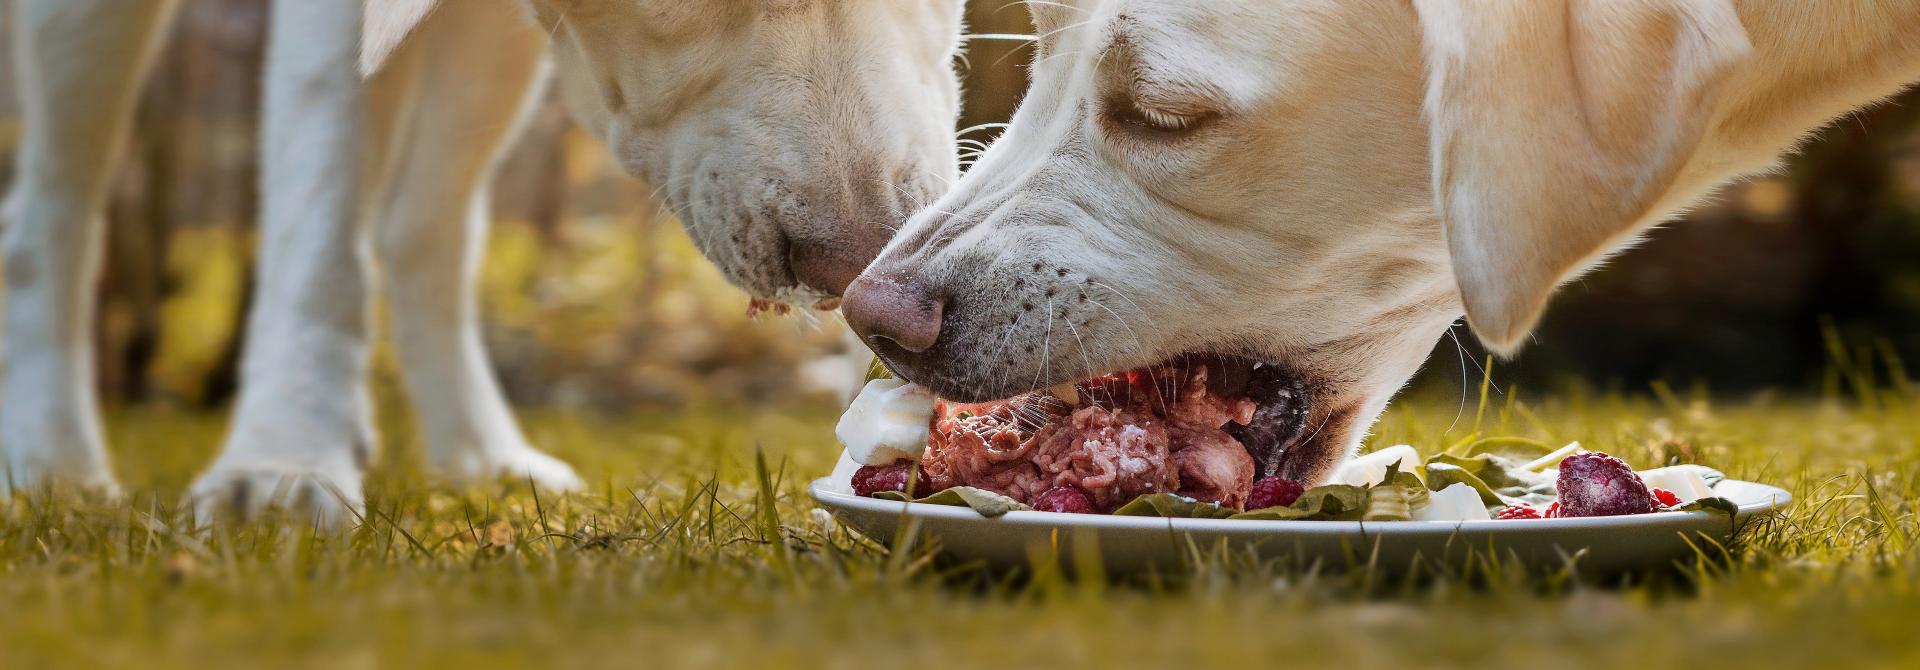 Zwei Hunde fressen Rohfutter